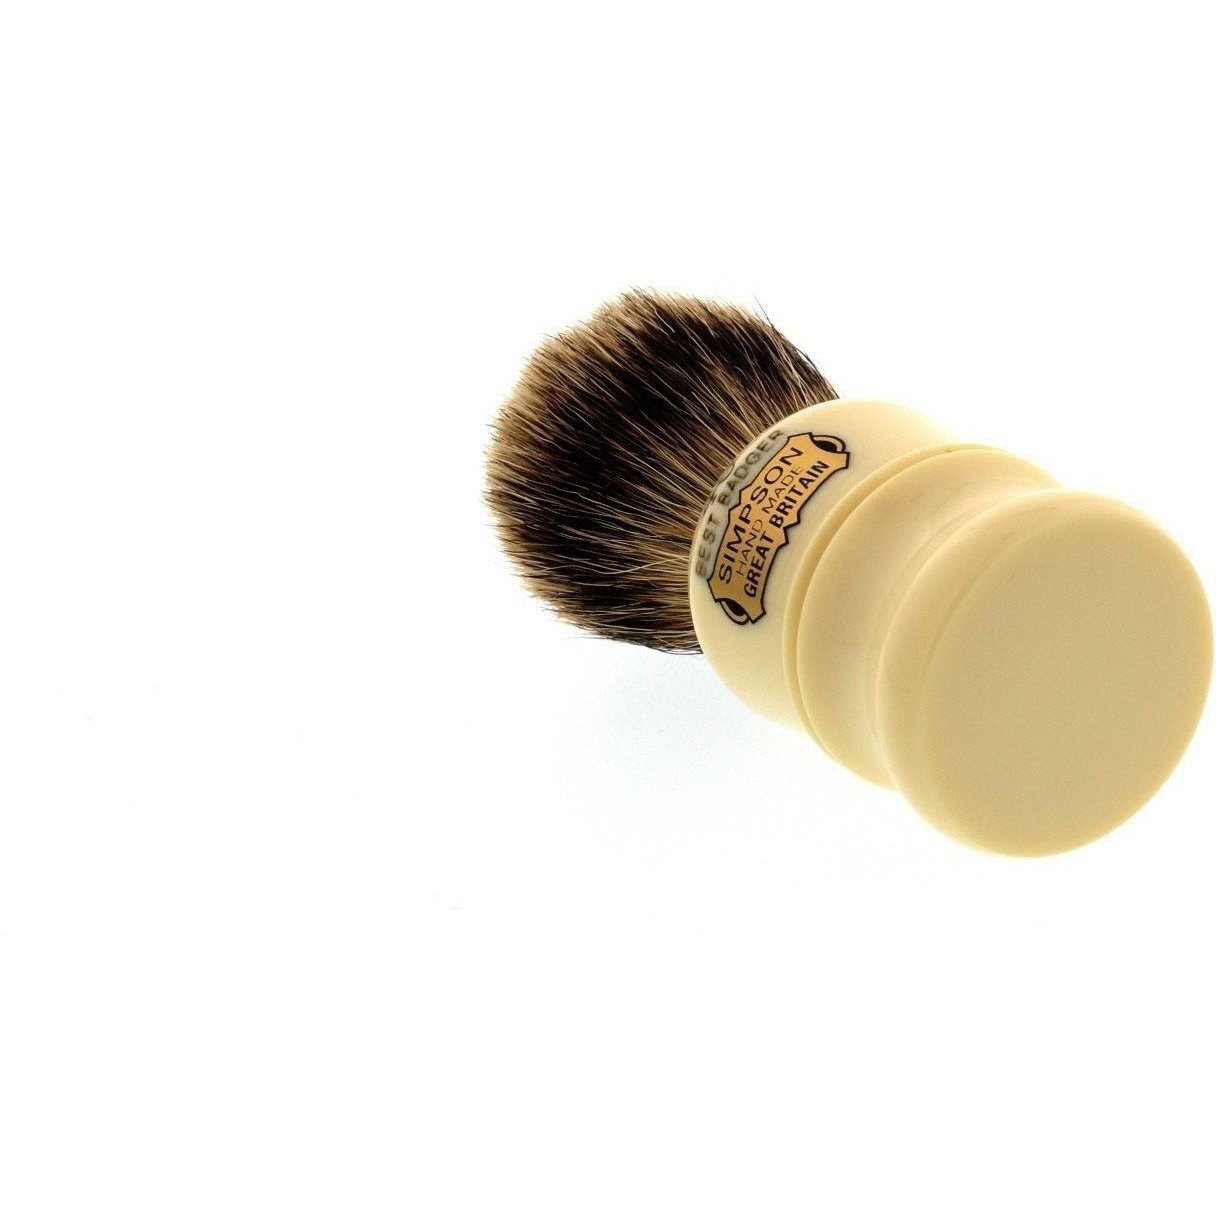 Product image 4 for Simpsons Berkeley Best Badger Shaving Brush 46B